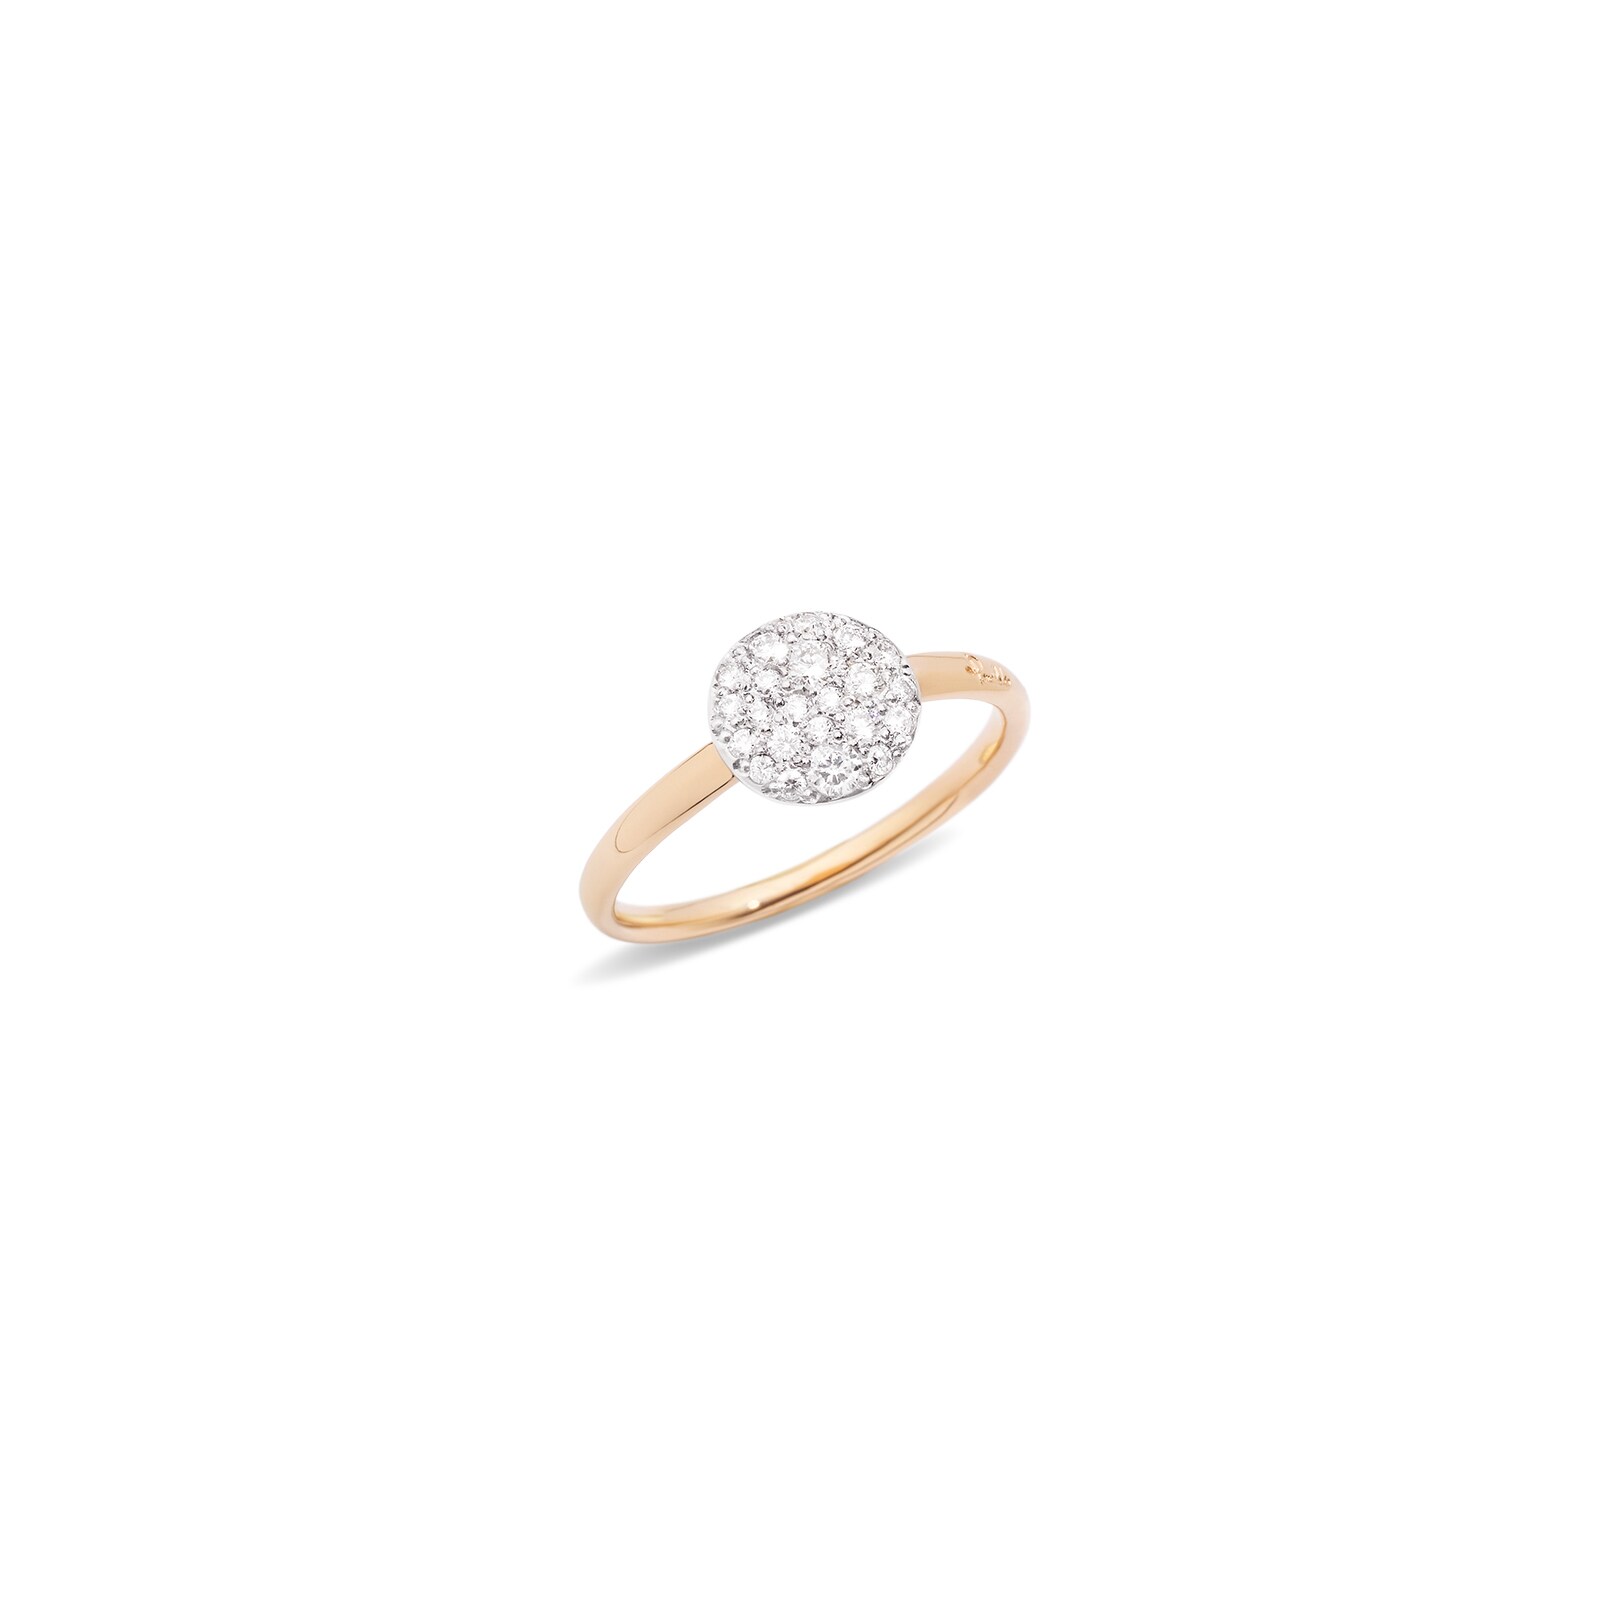 Sabbia 18ct Rose Gold 0.20ct Diamond Ring - Ring Size N